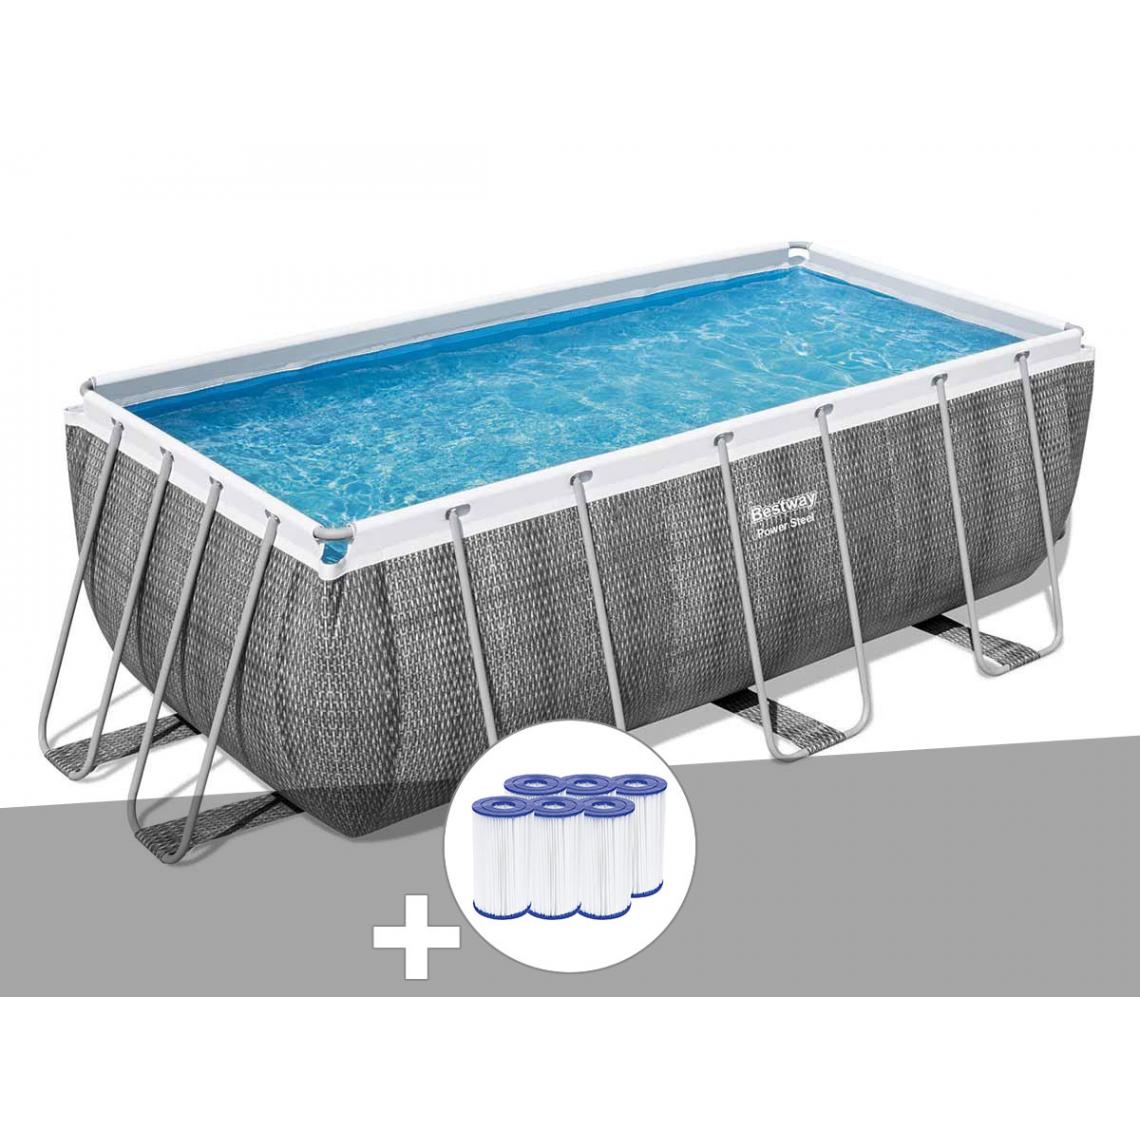 Bestway - Kit piscine tubulaire rectangulaire Bestway Power Steel 4,12 x 2,01 x 1,22 m + 6 cartouches de filtration - Piscine Tubulaire